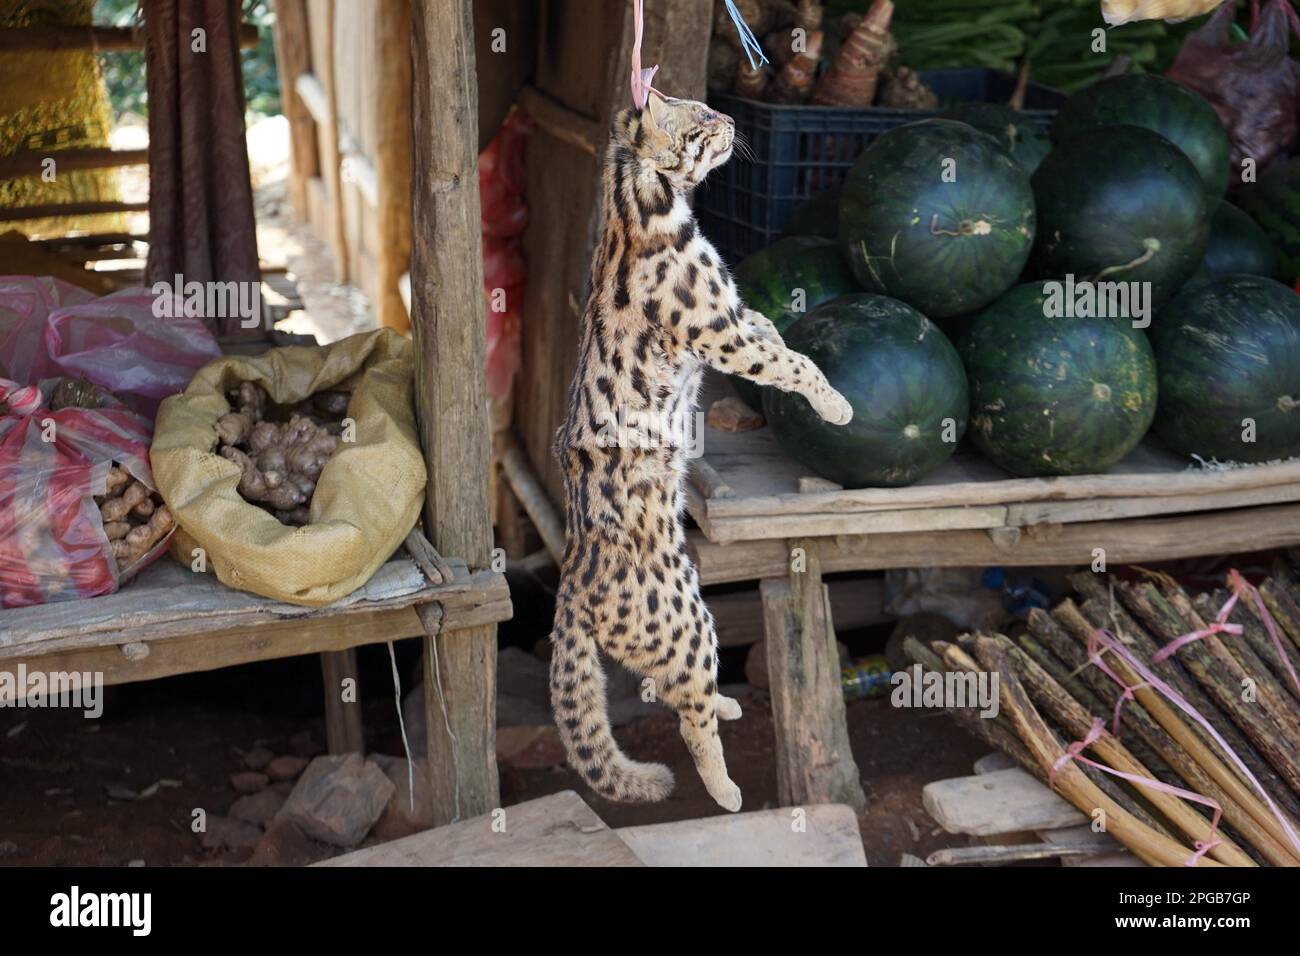 Décrochage au bord de la route, chat léopard mort (Prionailurus bengalensis), province d'Oudomxai, Laos Banque D'Images